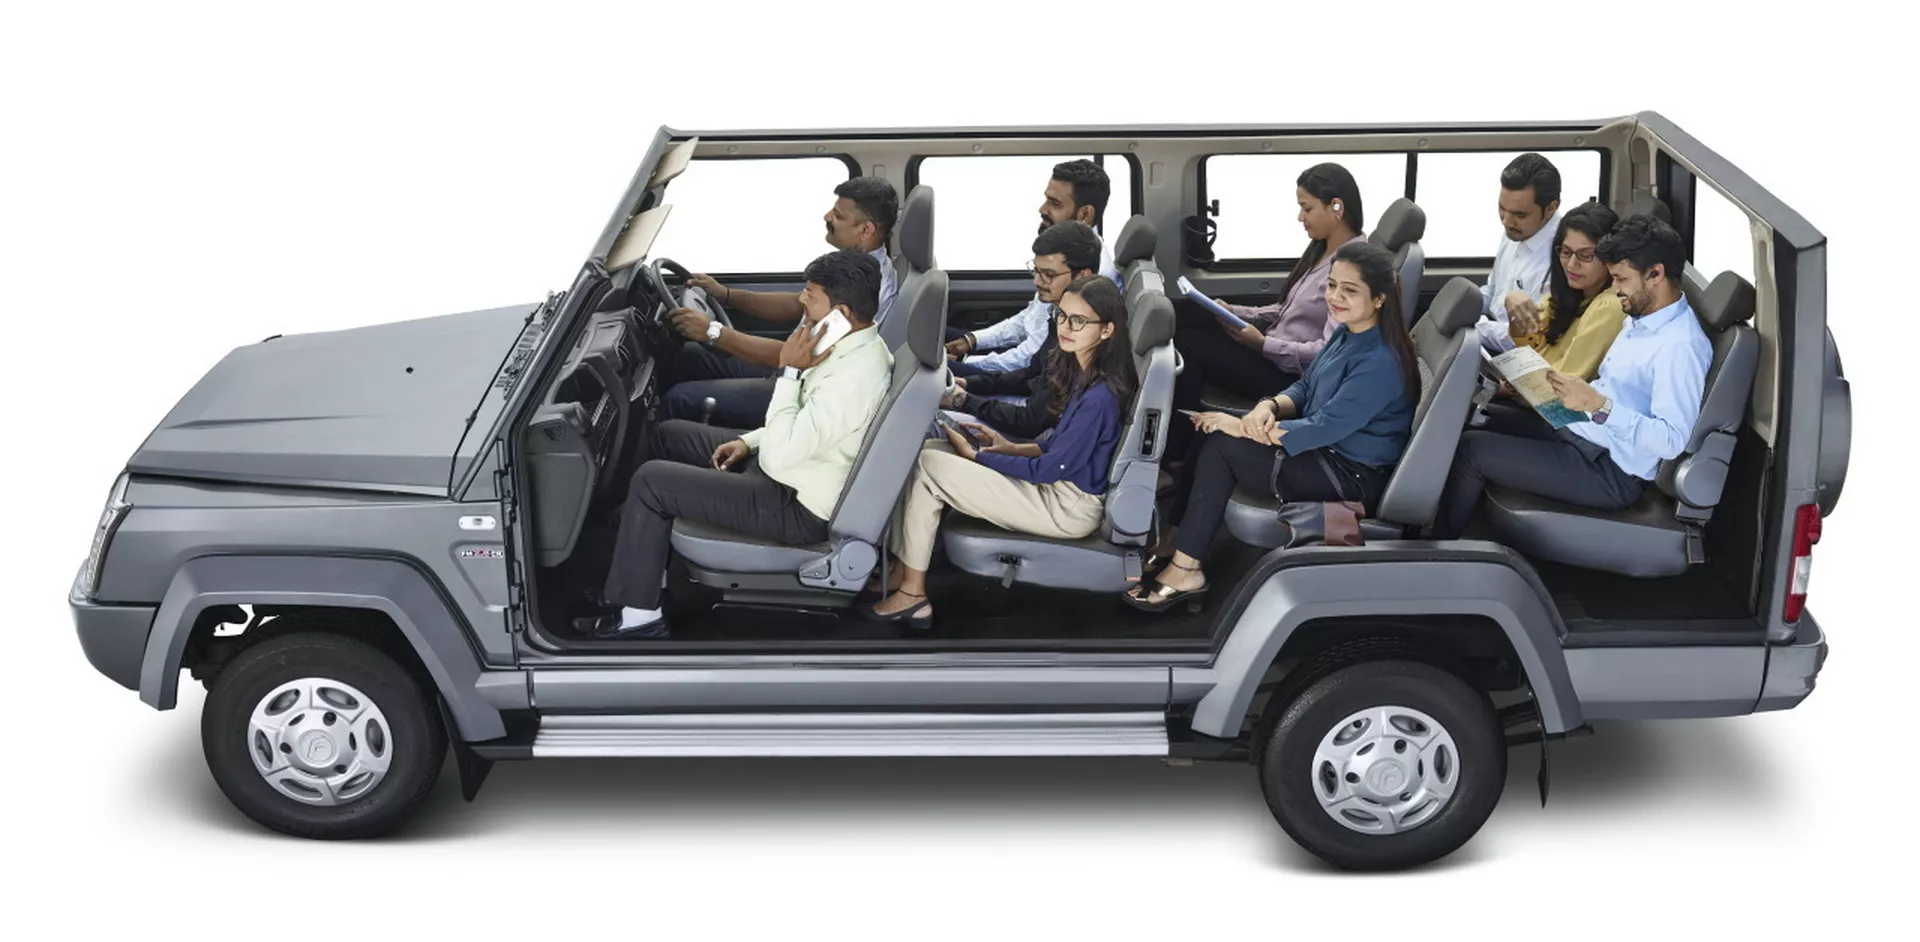 انطلاق SUV هندية عملاقة بـ 10 مقاعد وتصميم مستوحى من سيارات جي كلاس القديمة 2